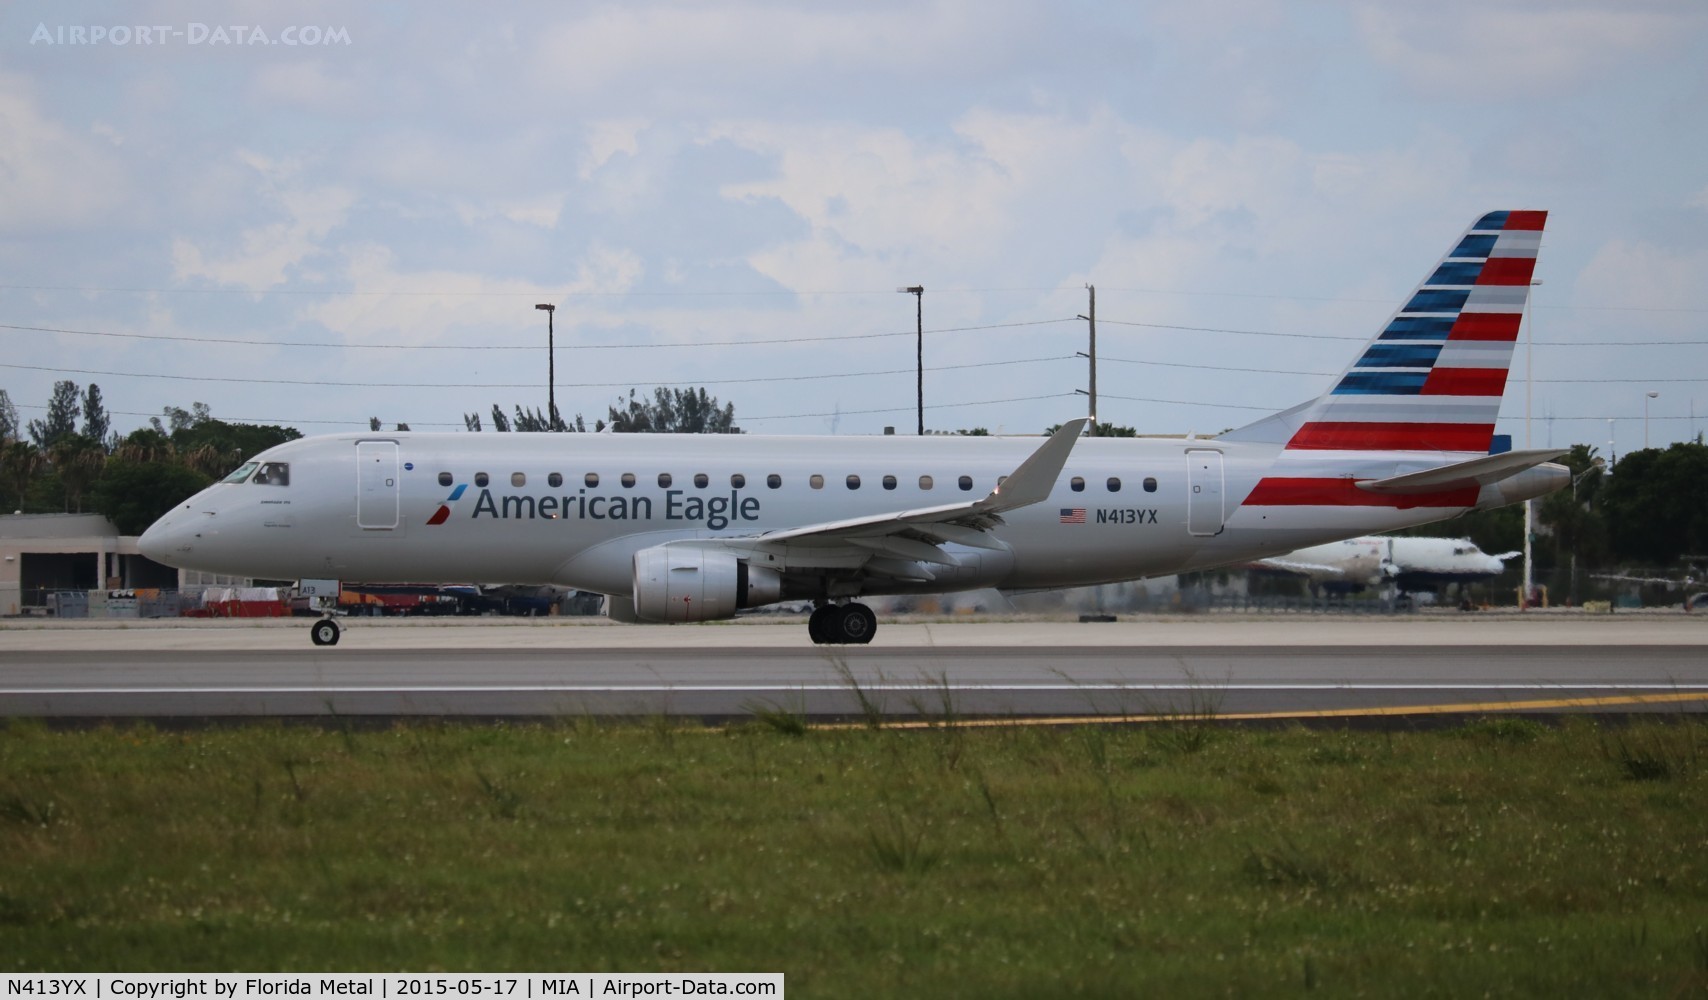 N413YX, 2013 Embraer 175LR (ERJ-170-200LR) C/N 17000376, American Eagle